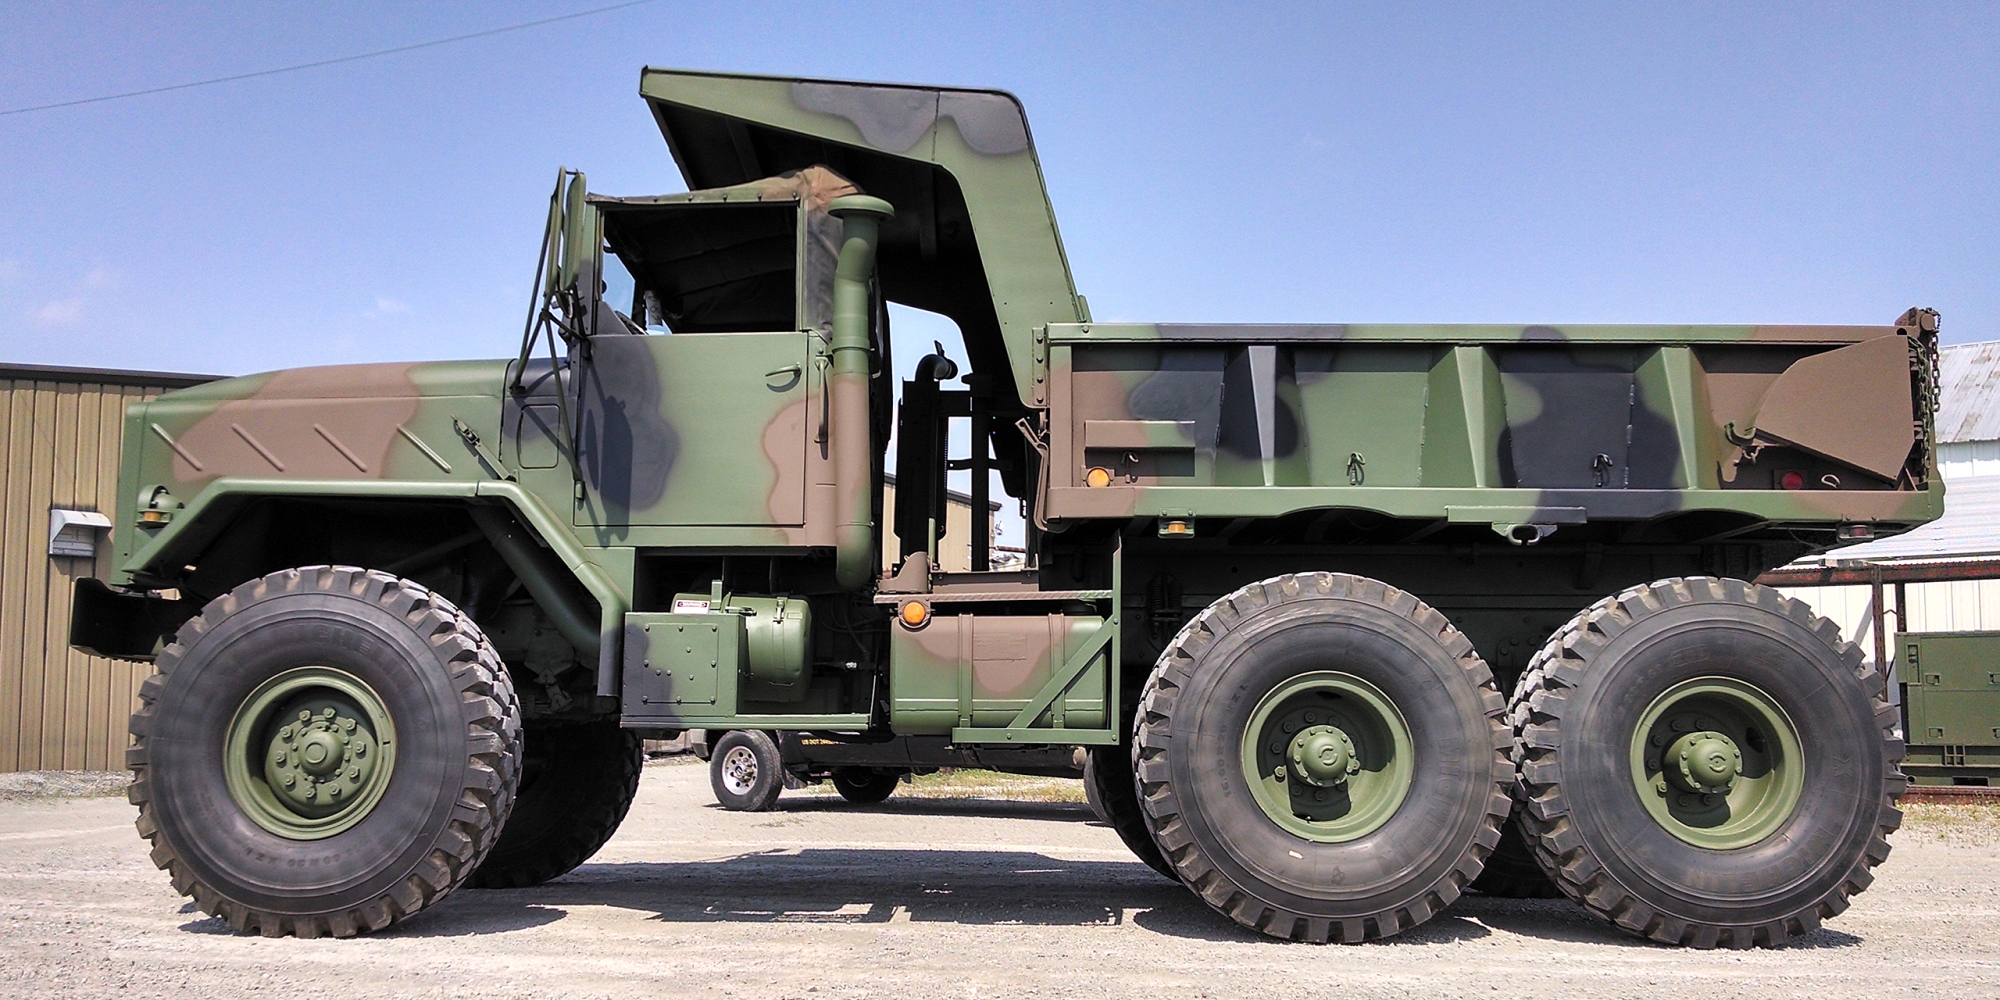 Oshkosh family of medium tactical vehicles (fmtv) - army technology